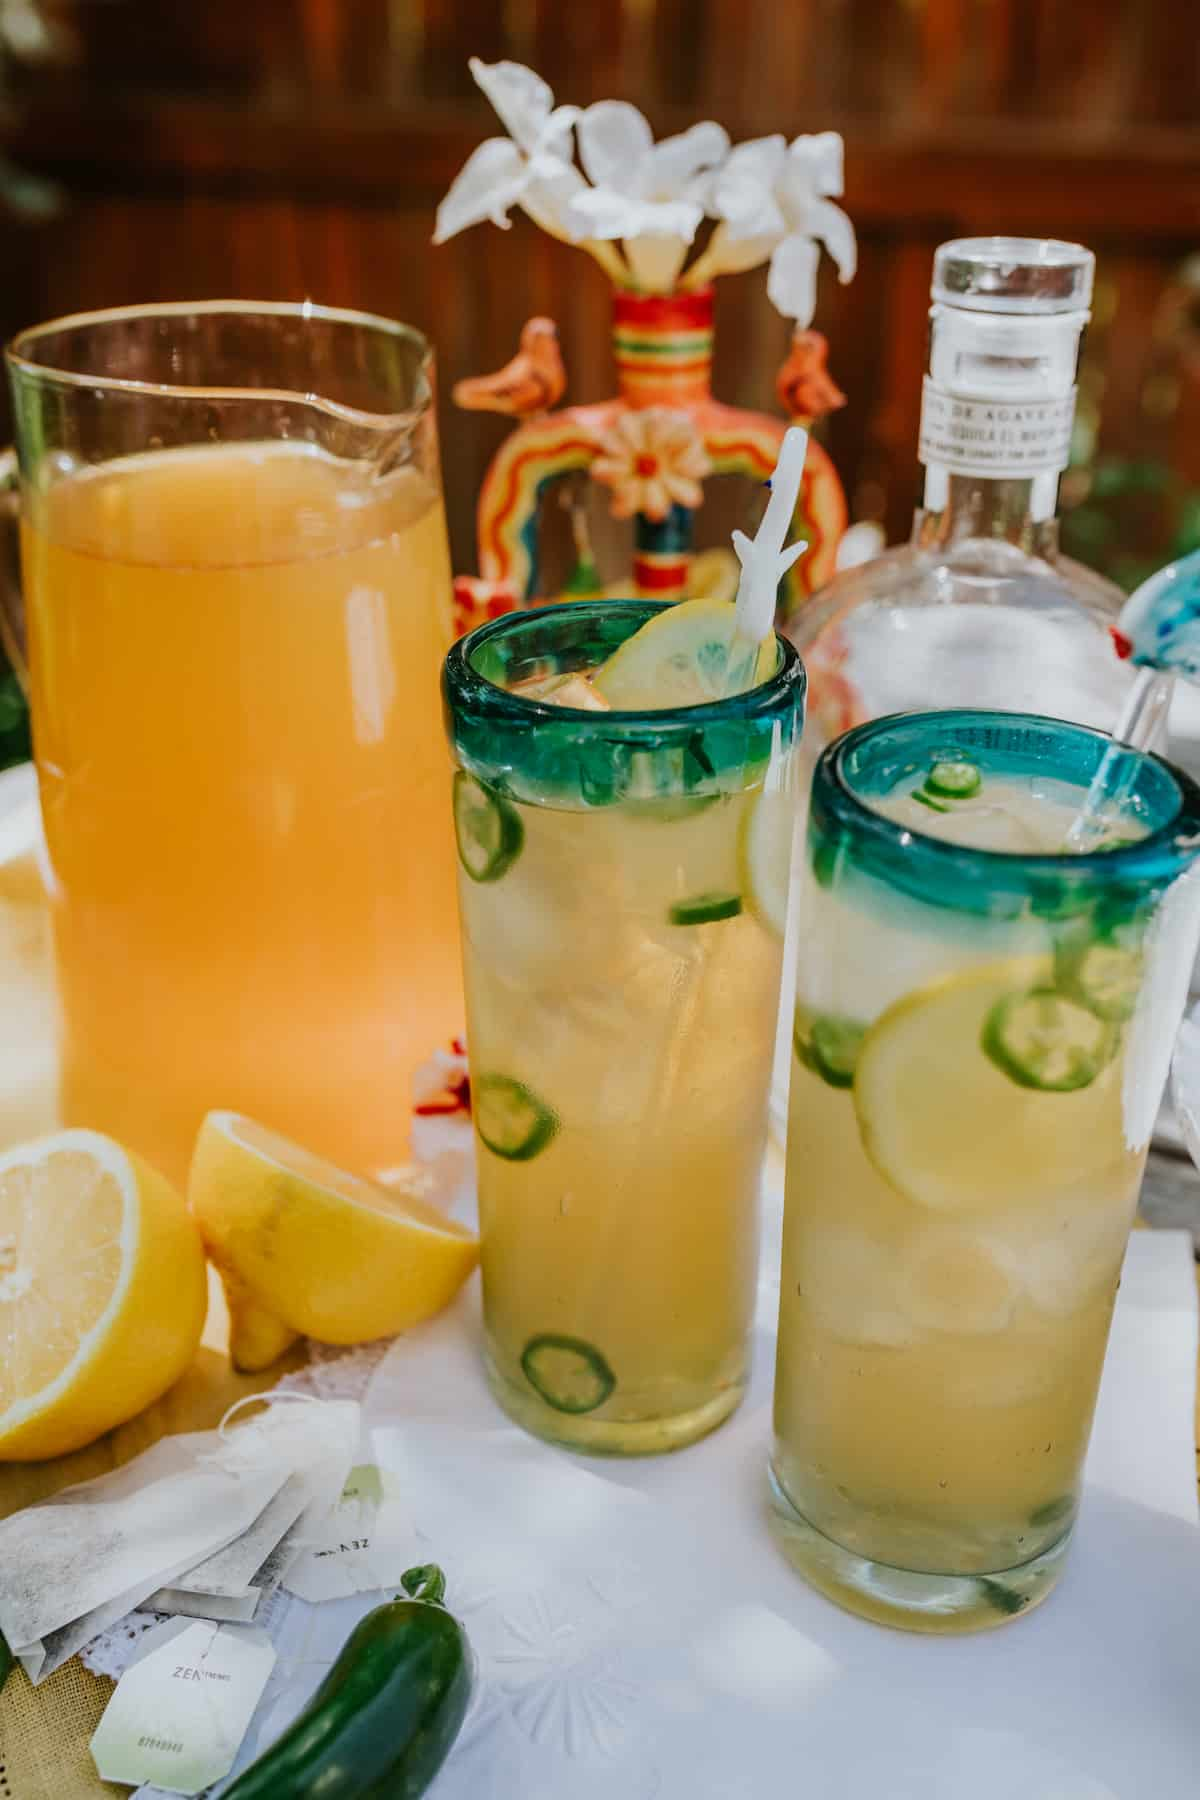 jarra alta de chá verde limonada ao fundo com duas margaritas de palmeira picante em copos verdejantes em primeiro plano